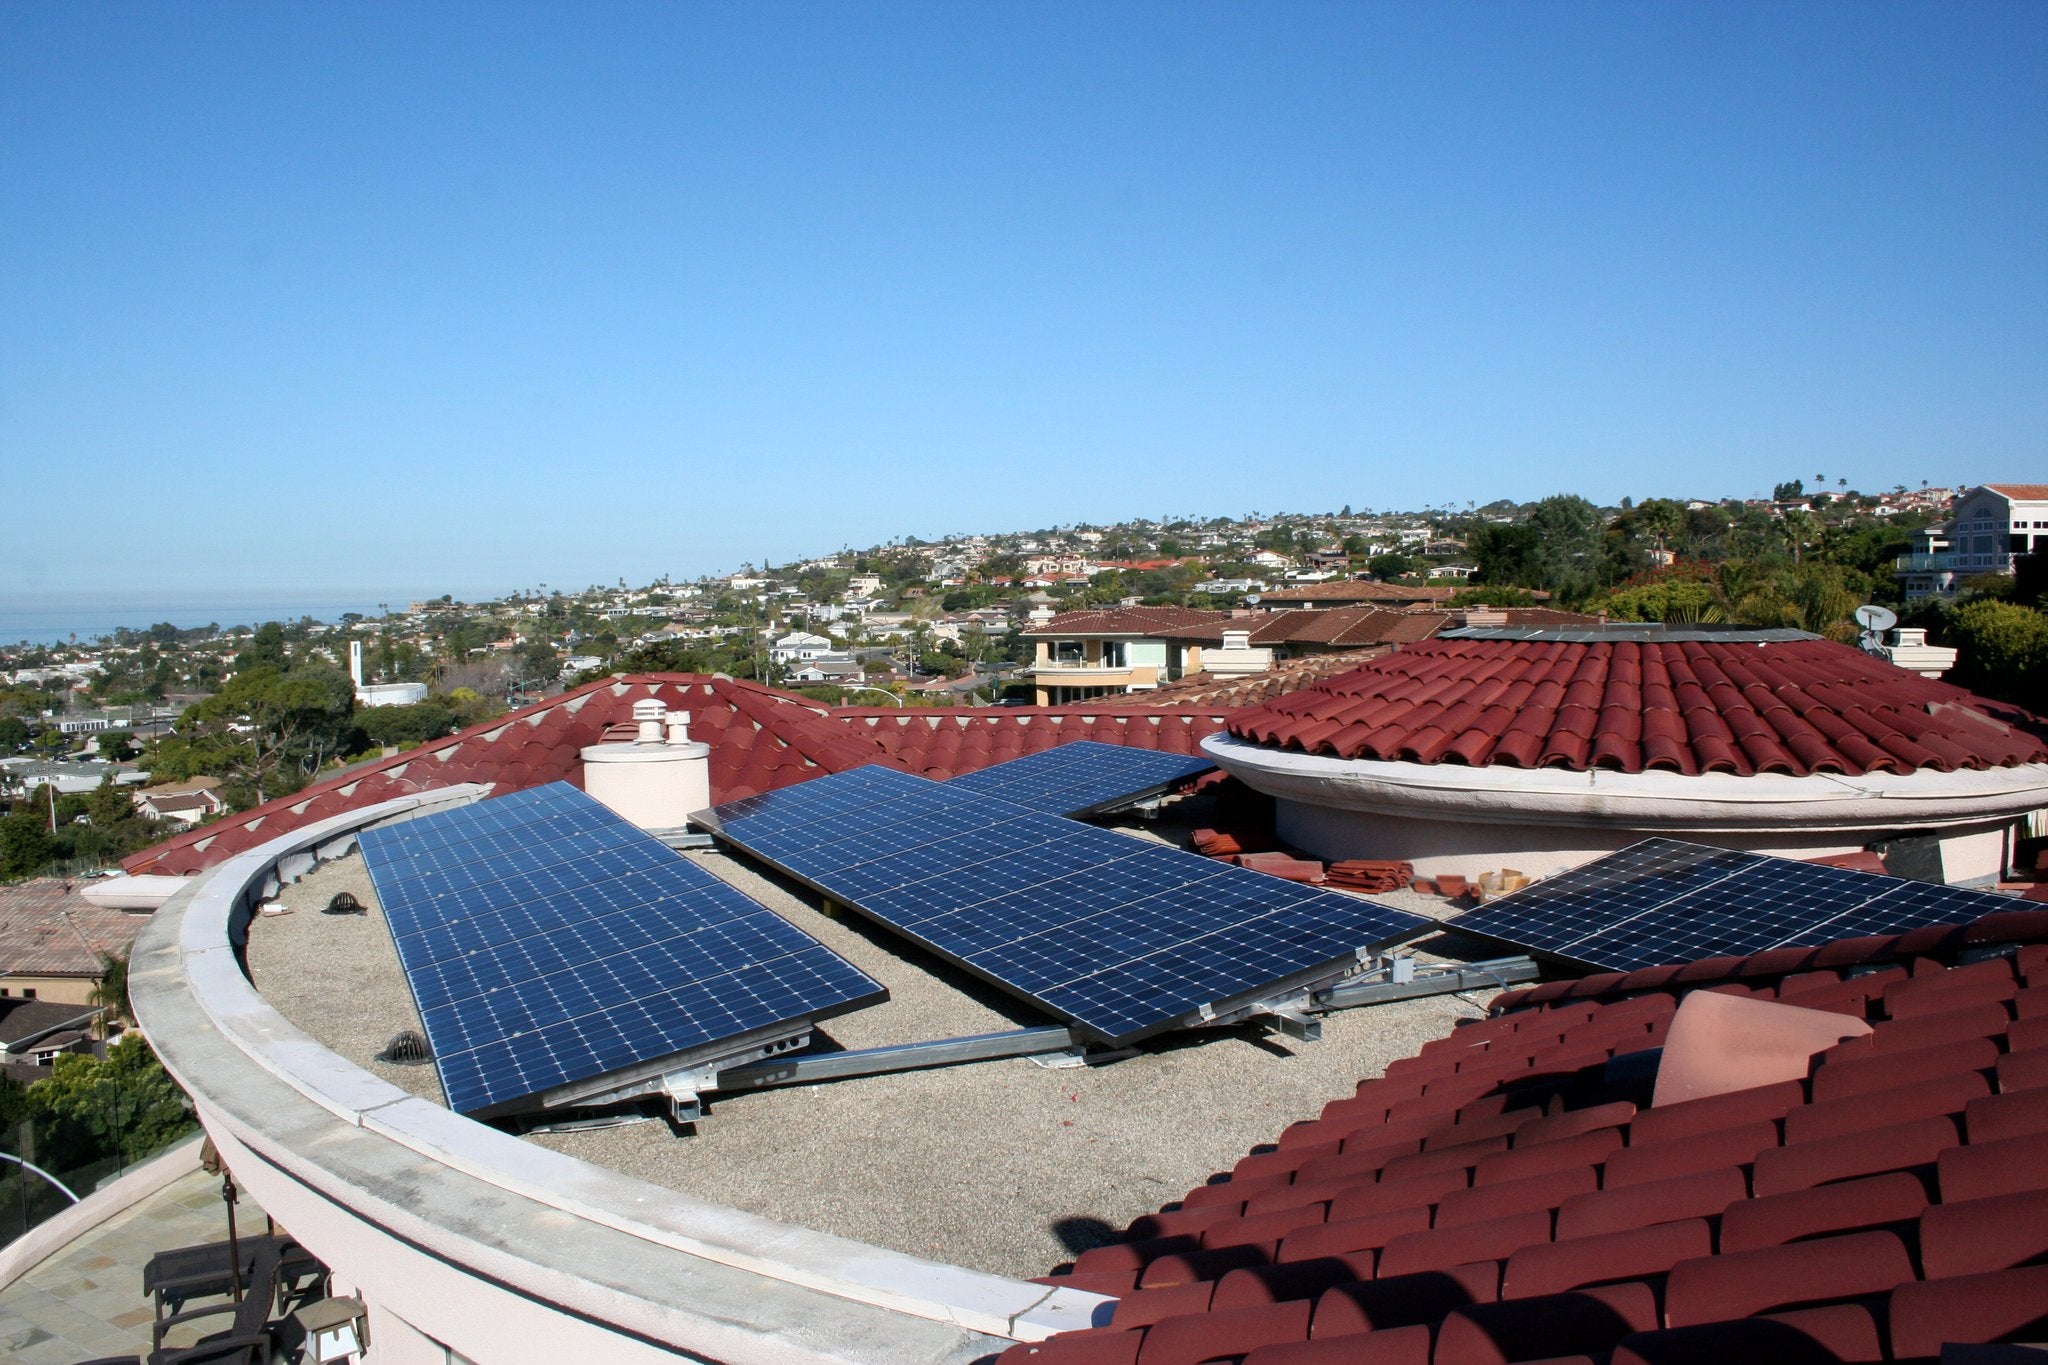 24 Sunpower238-watt high-efficiency solar panels